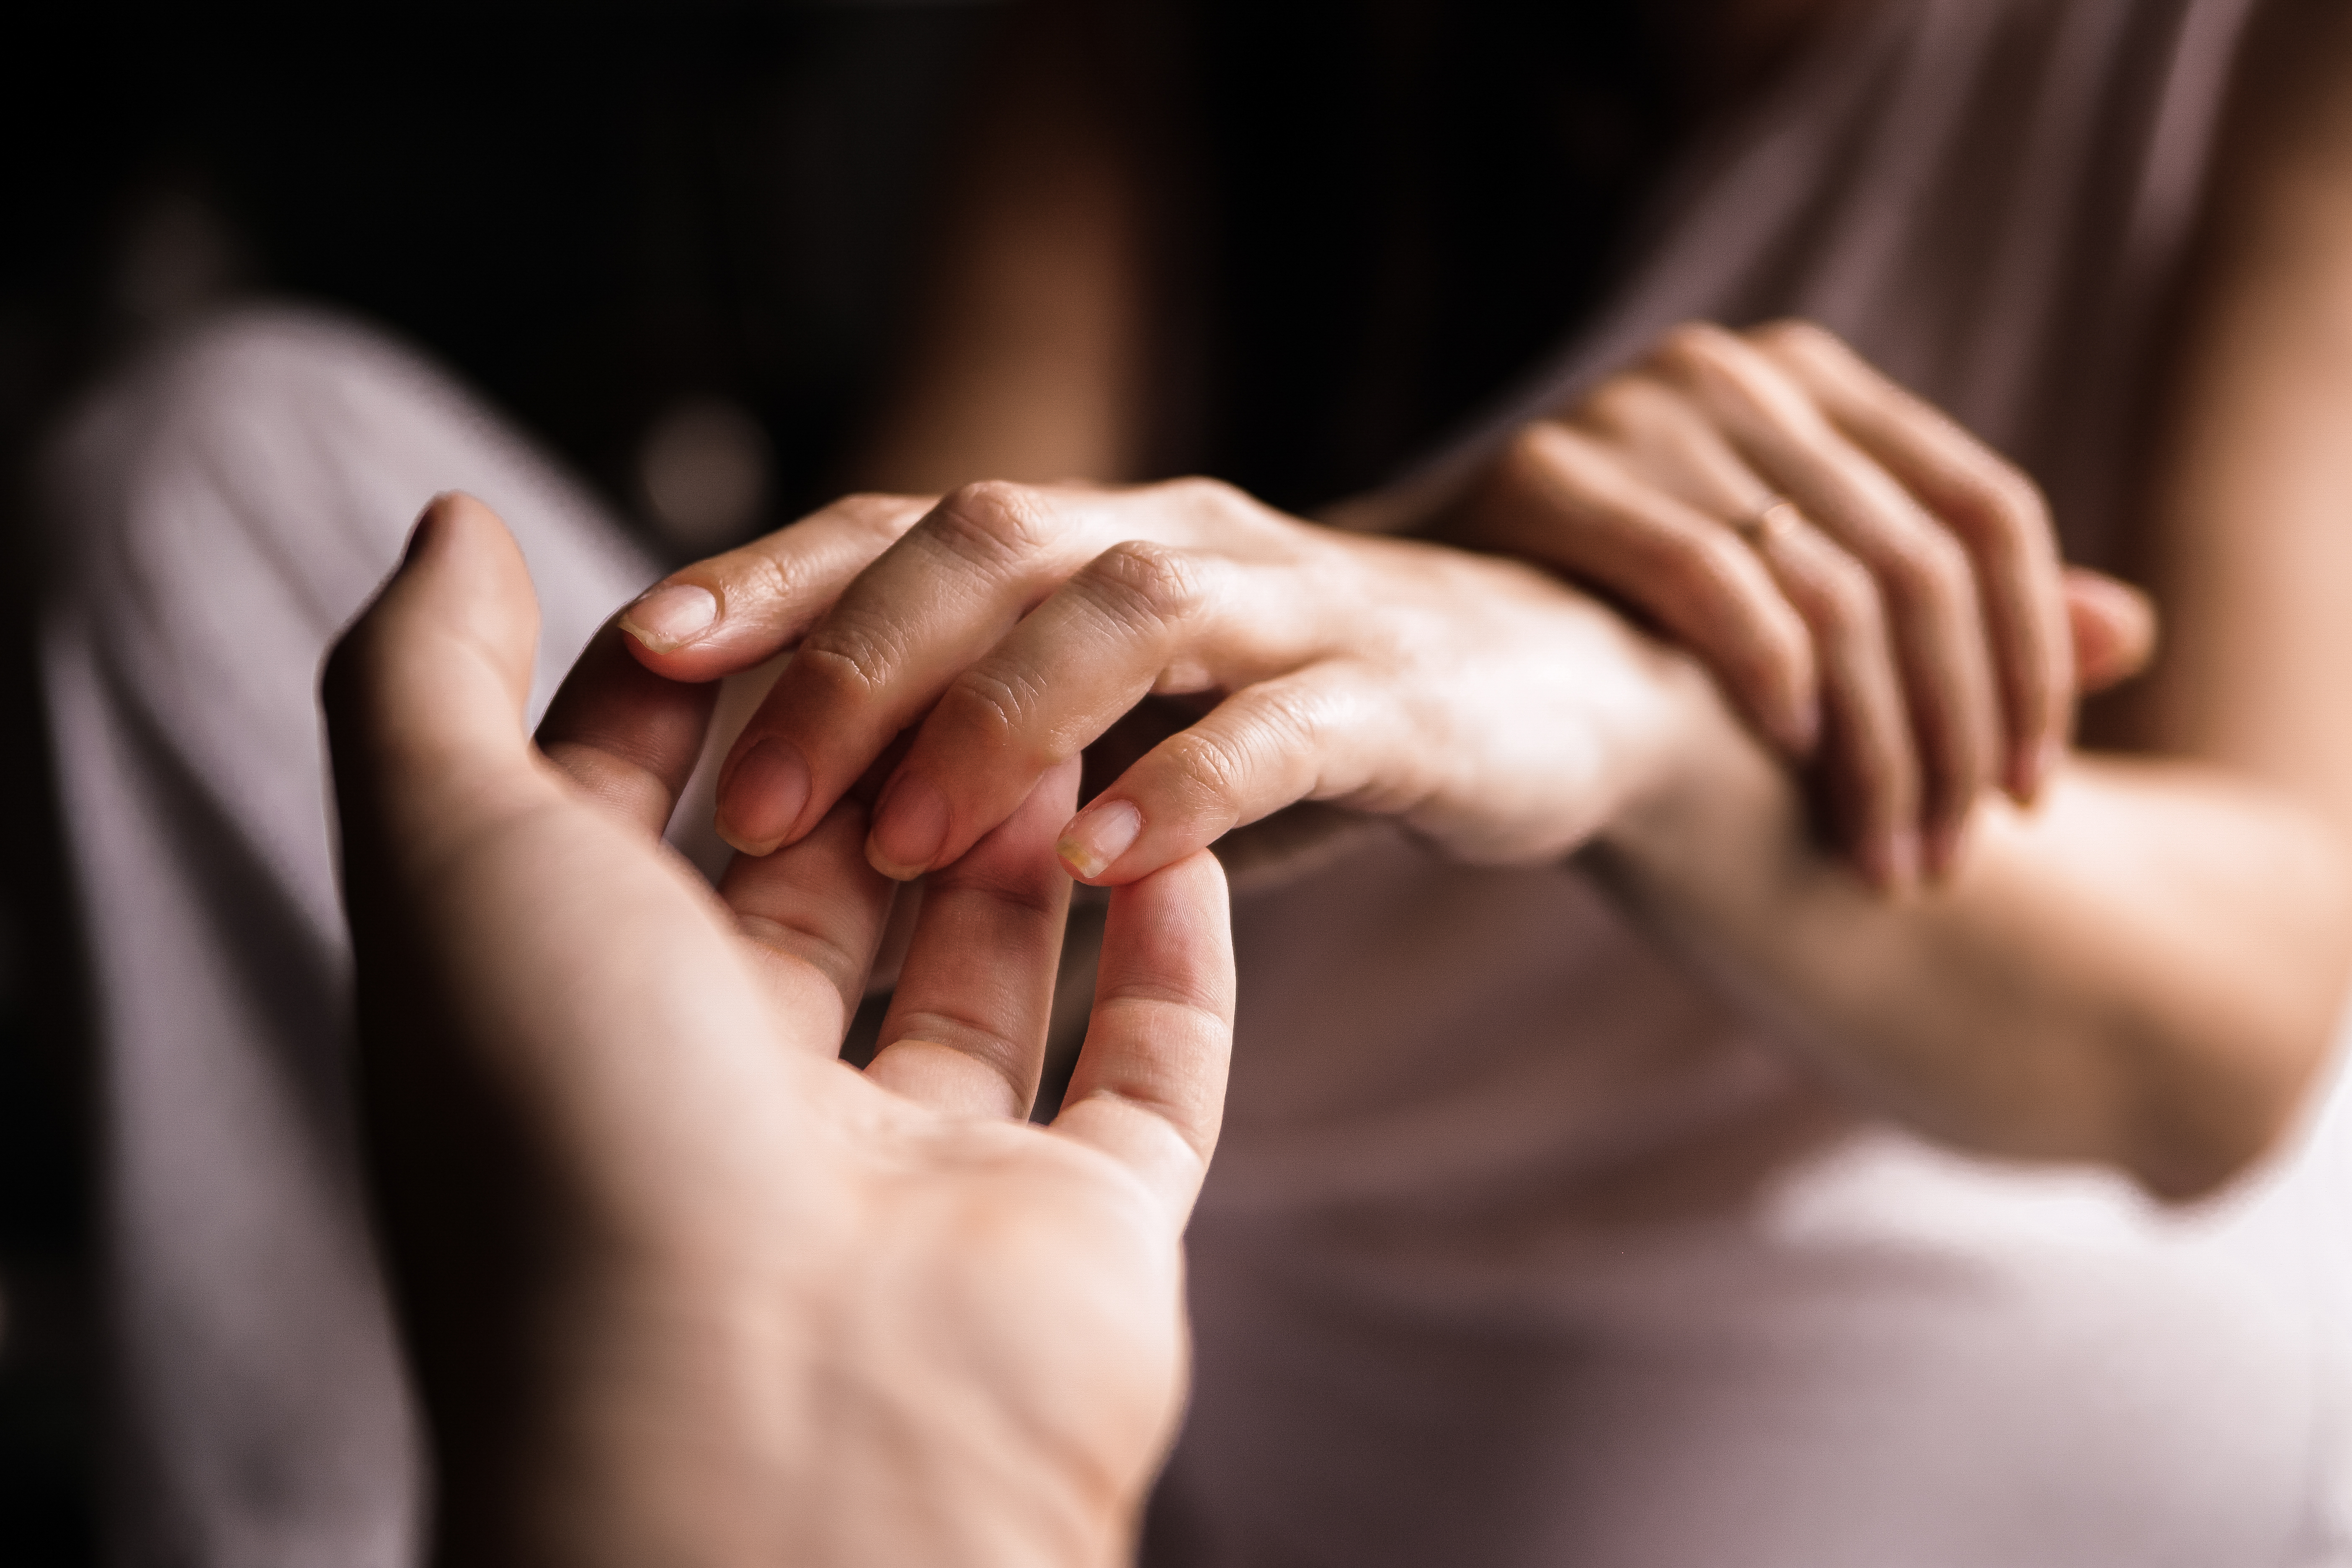 Mujer y hombre cogidos de la mano | Fuente: Shutterstock